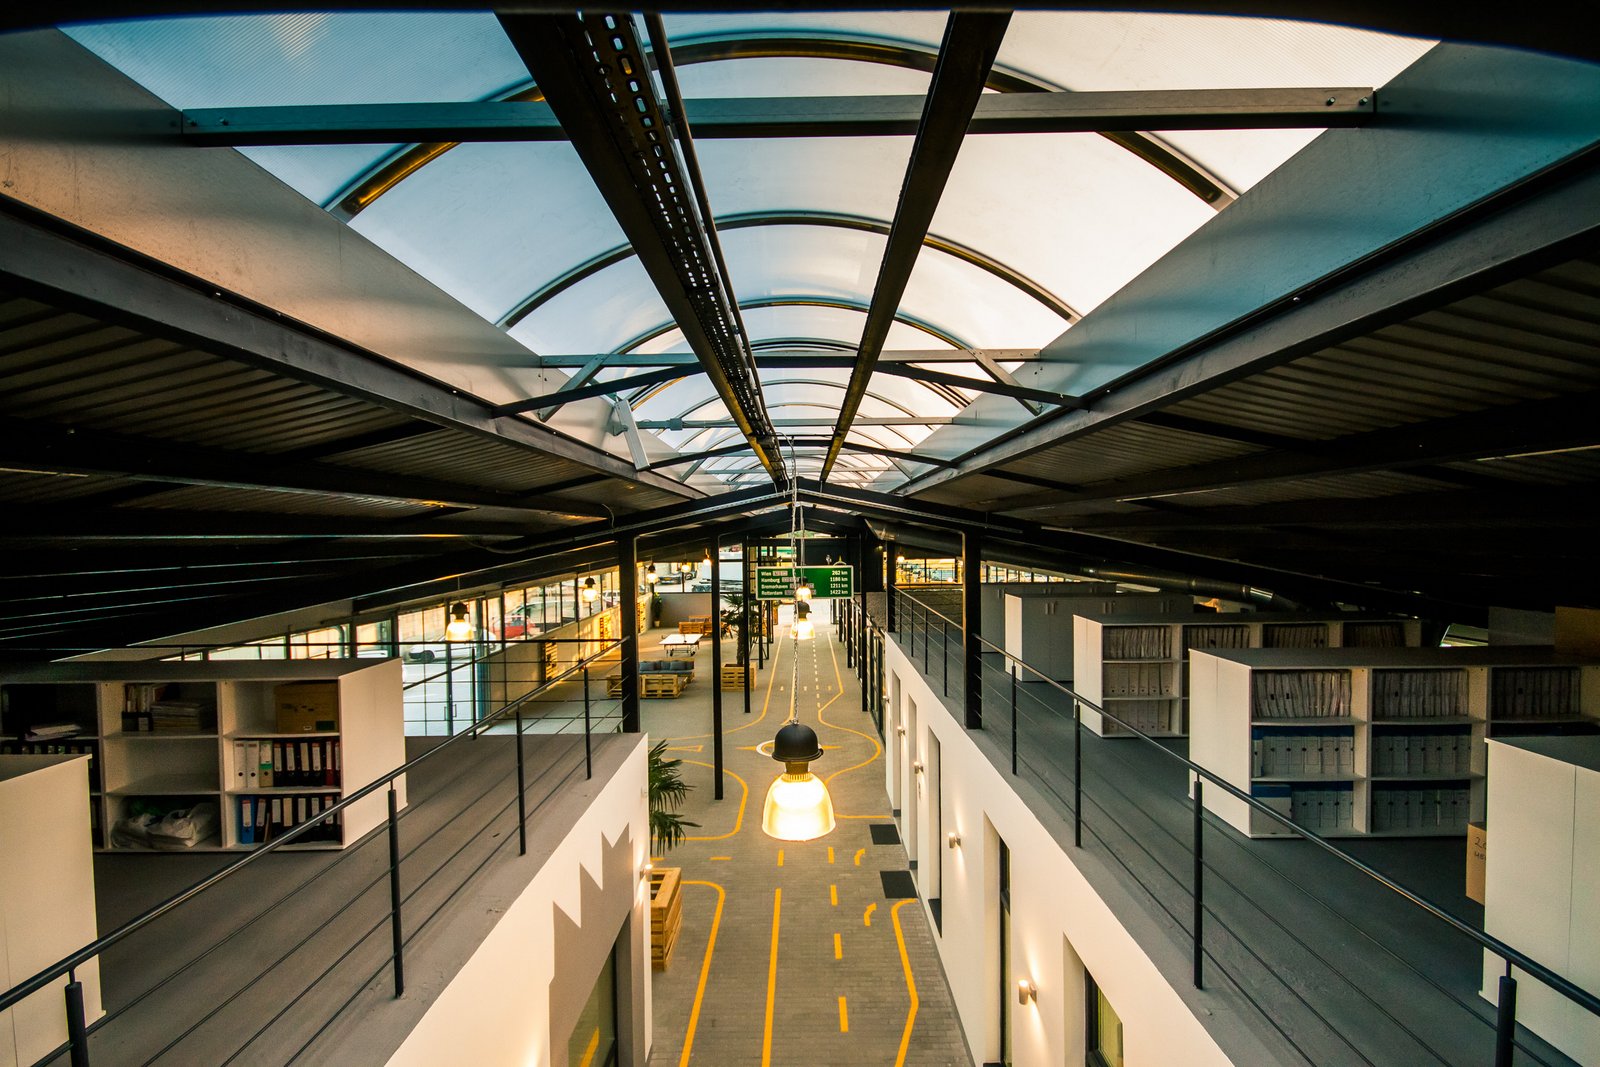 Csarnok tető - egyedi gépészet / Roof with energy-friendly machinery